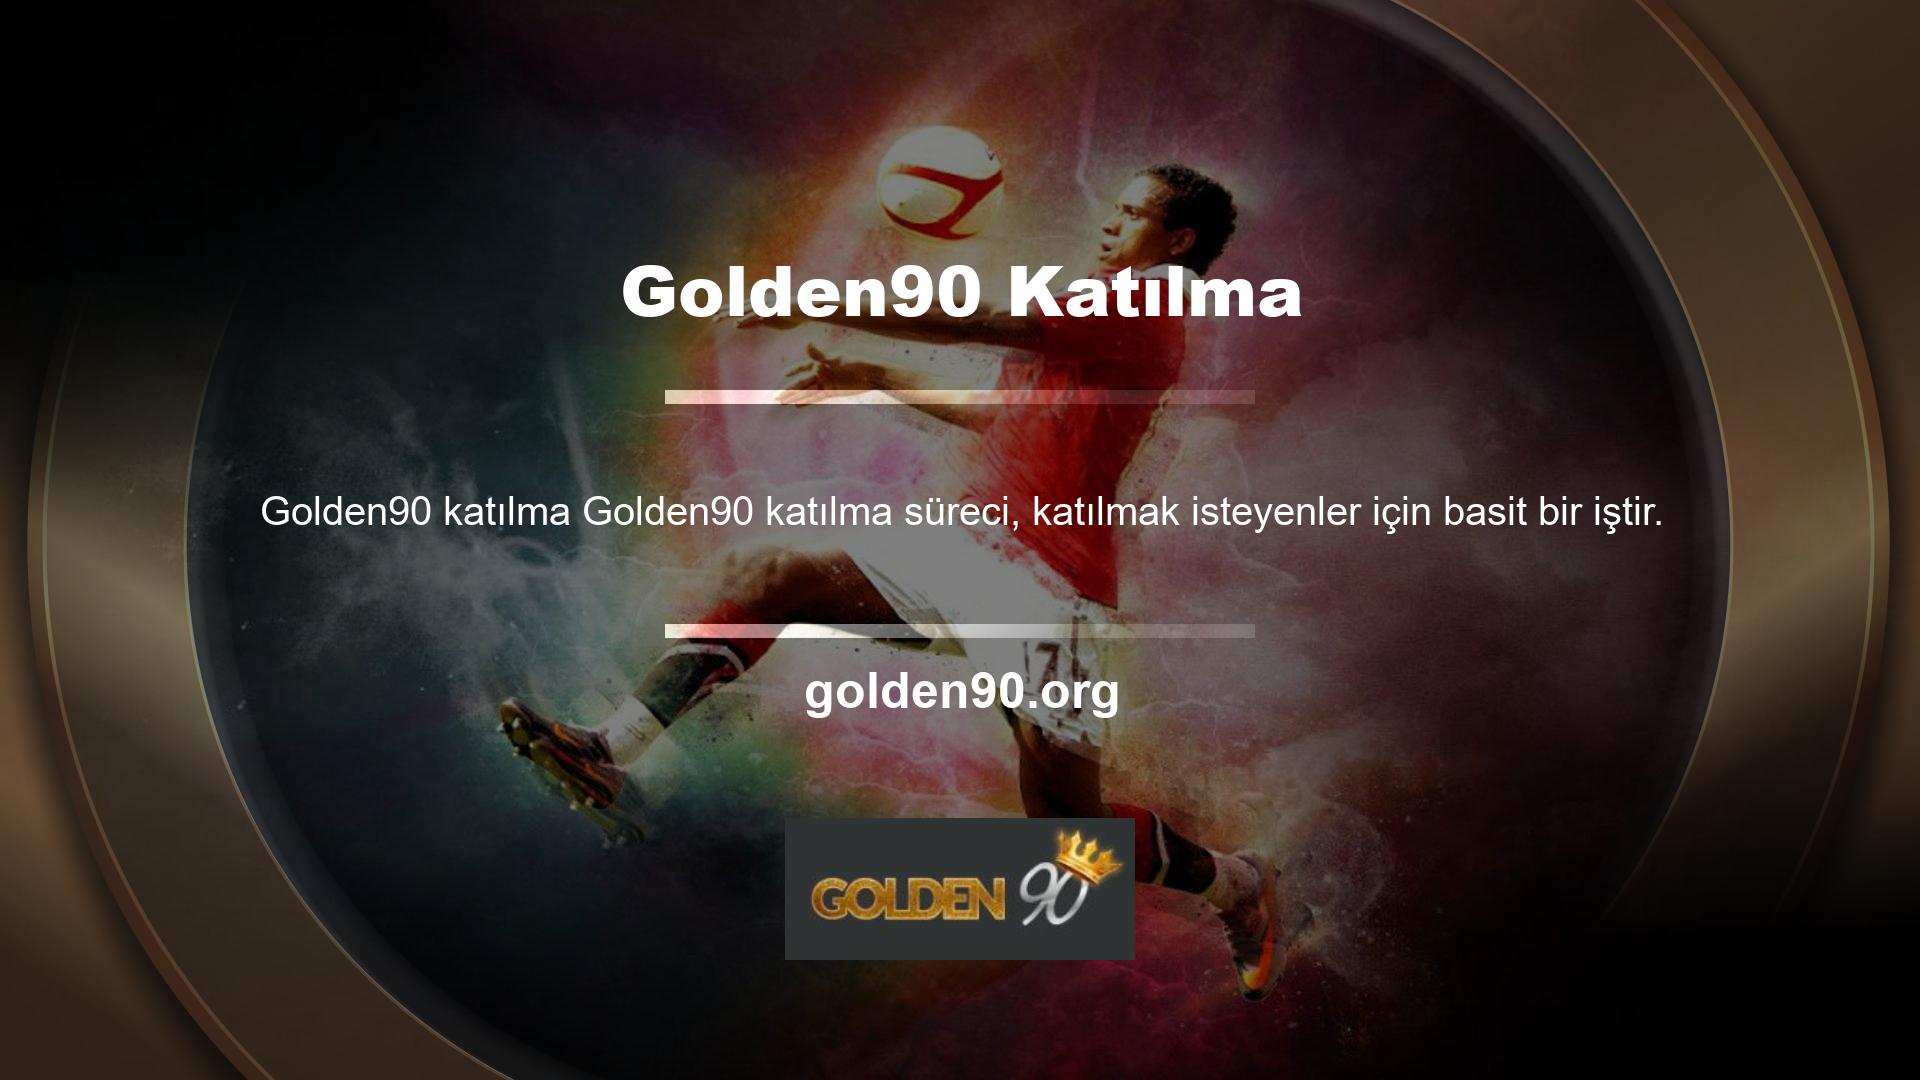 Golden90 müşteri hizmetleri de kaydolmanıza yardımcı olacaktır